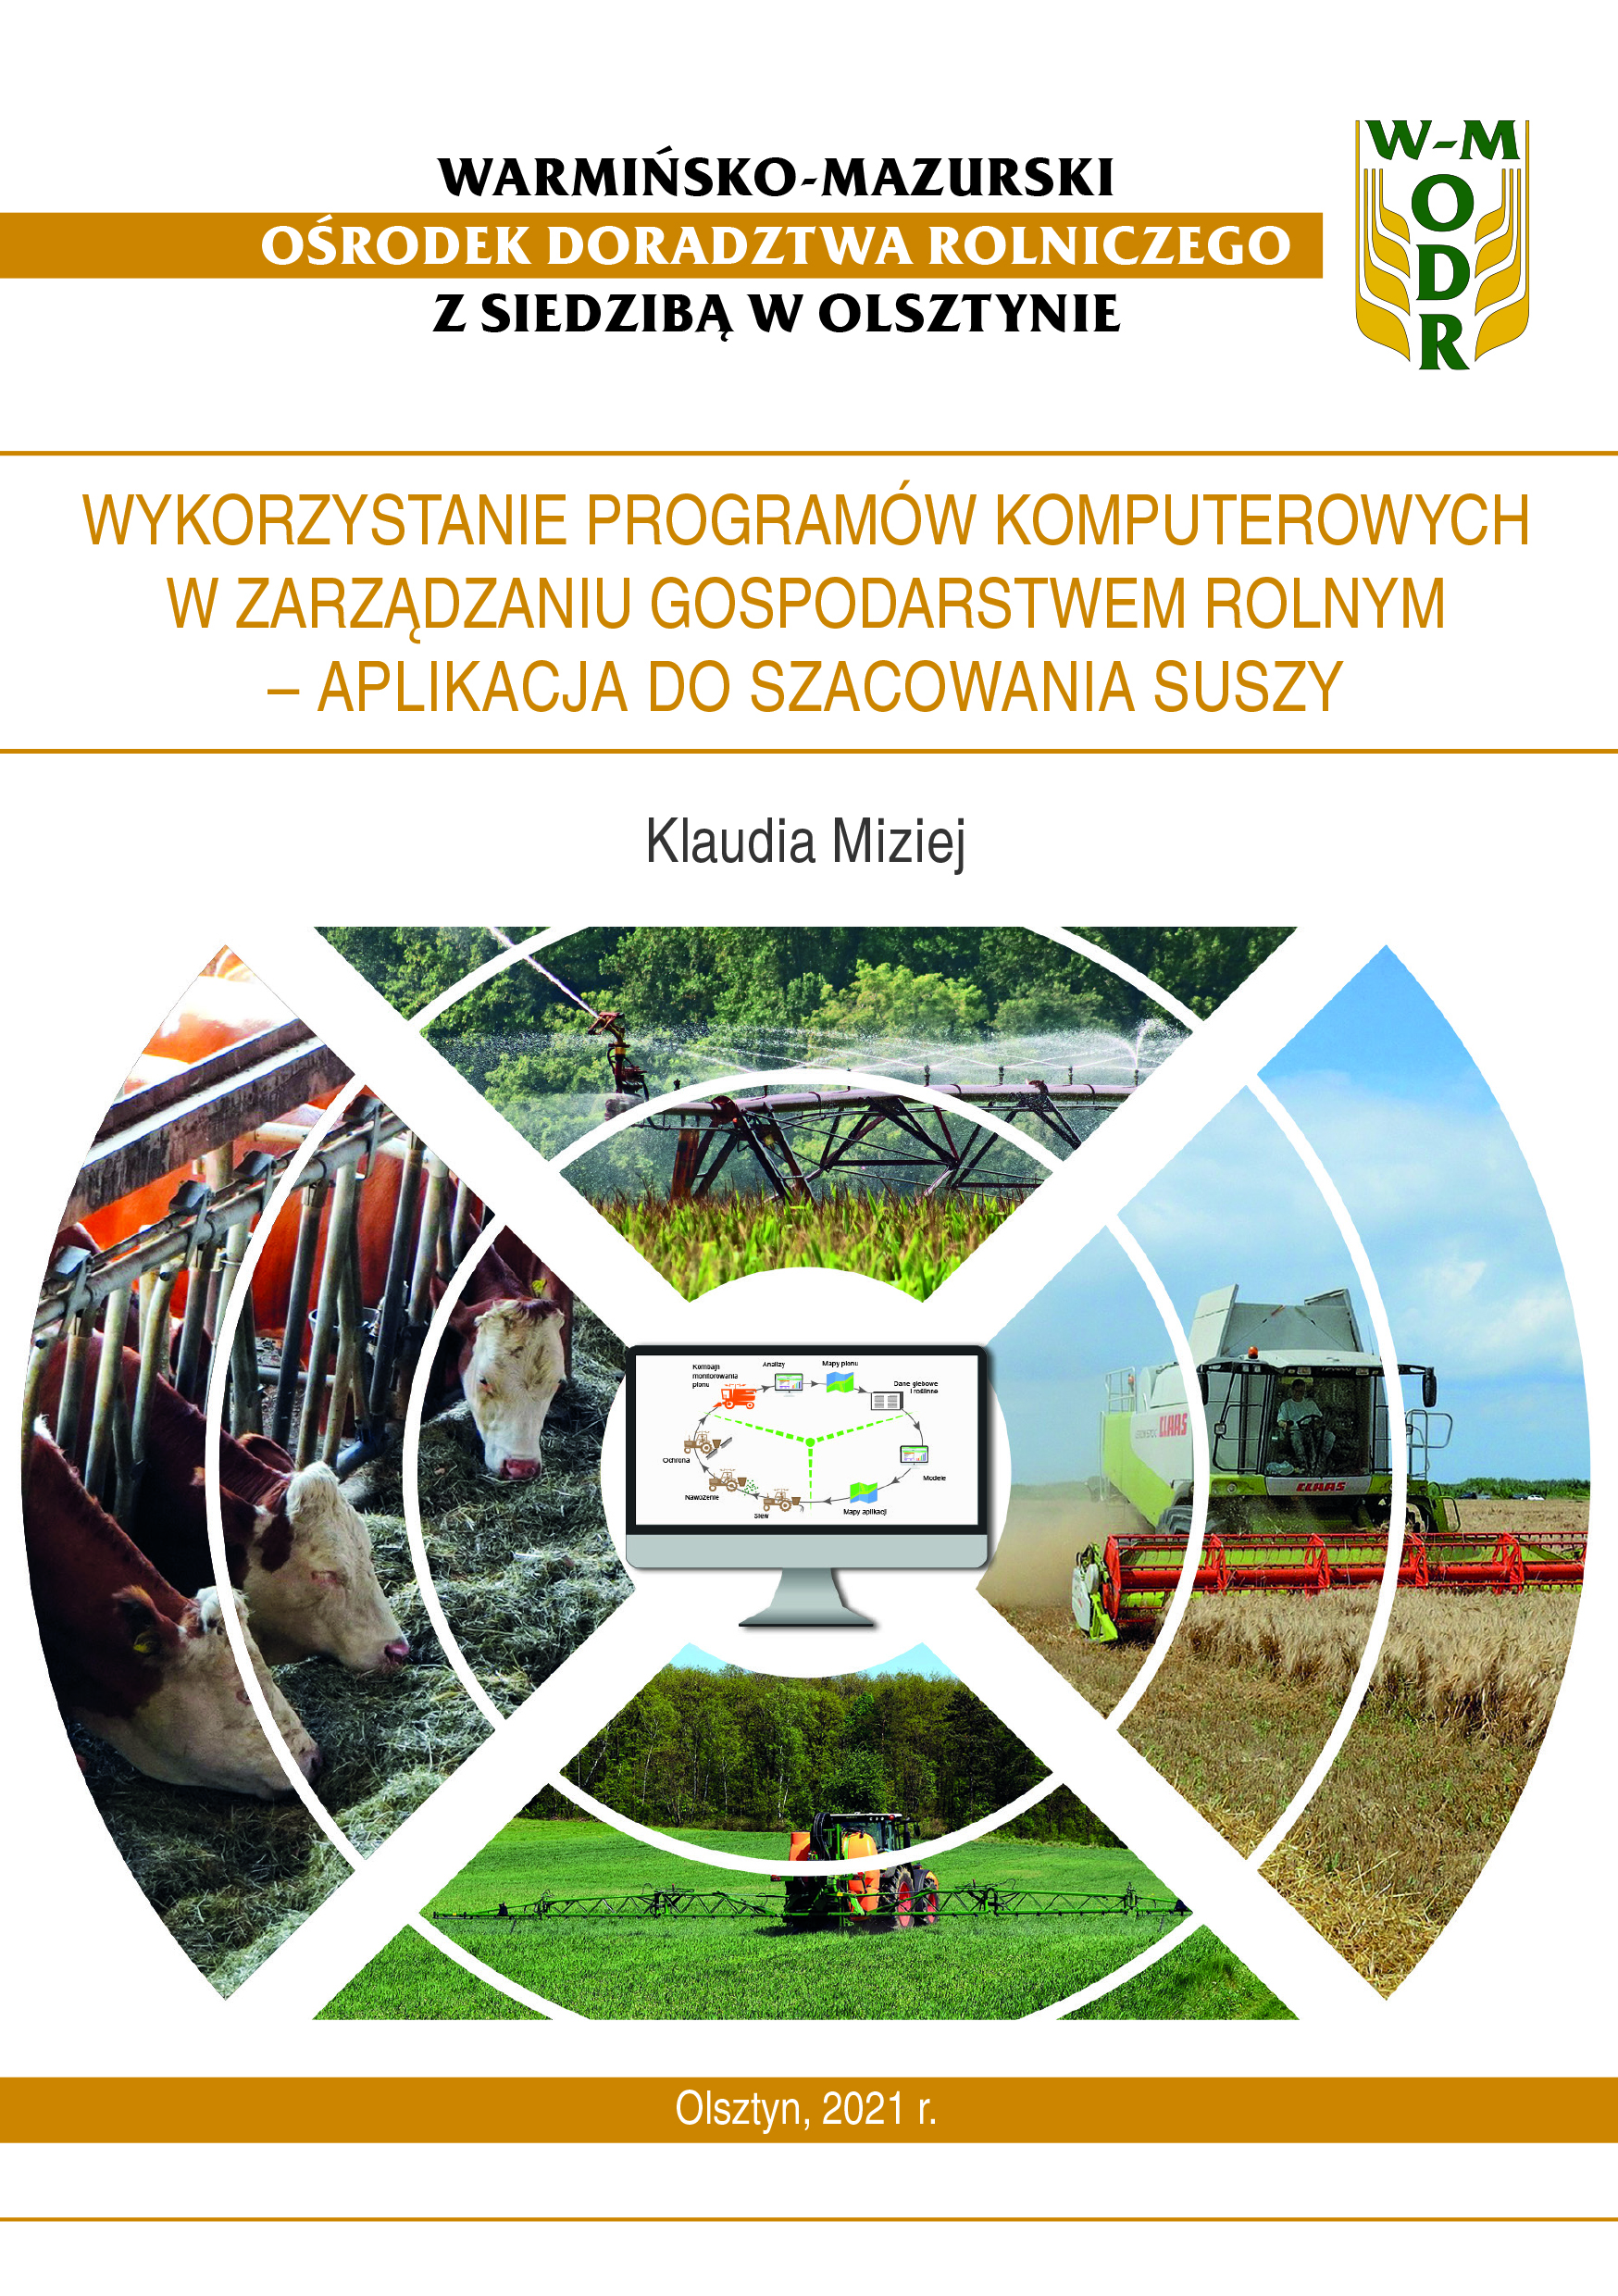 Wykorzystanie programów komputerowych w zarządzaniu gospodarstwem rolnym – aplikacja do szacowania suszy